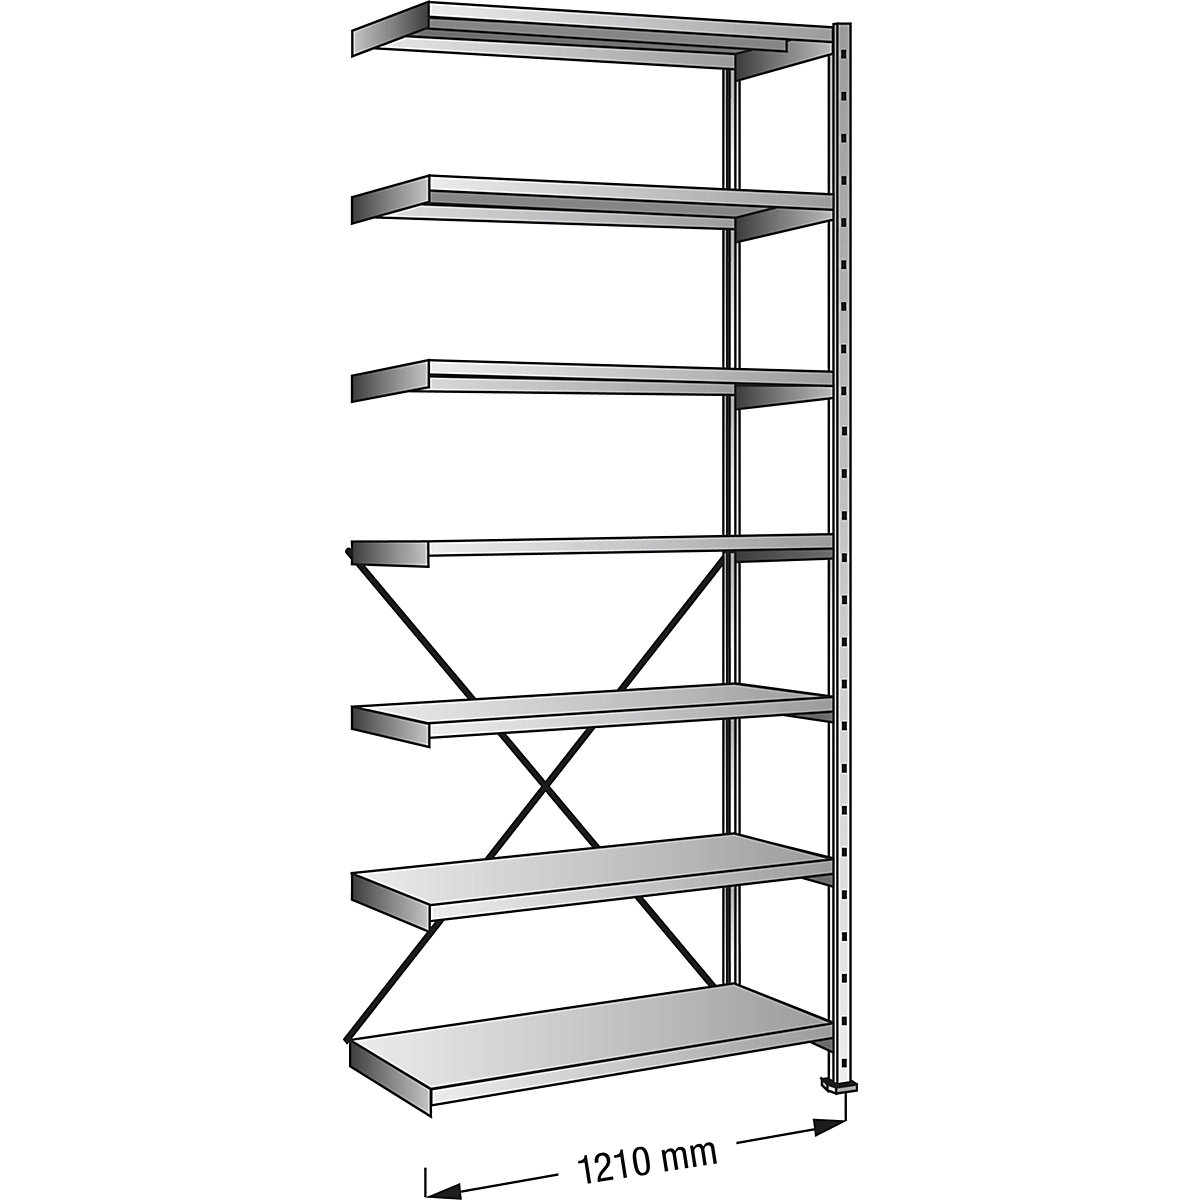 Boltless shelving unit, zinc plated, 7 shelves, height 2640 mm, shelf width 1200 mm, depth 1000 mm, extension shelf unit